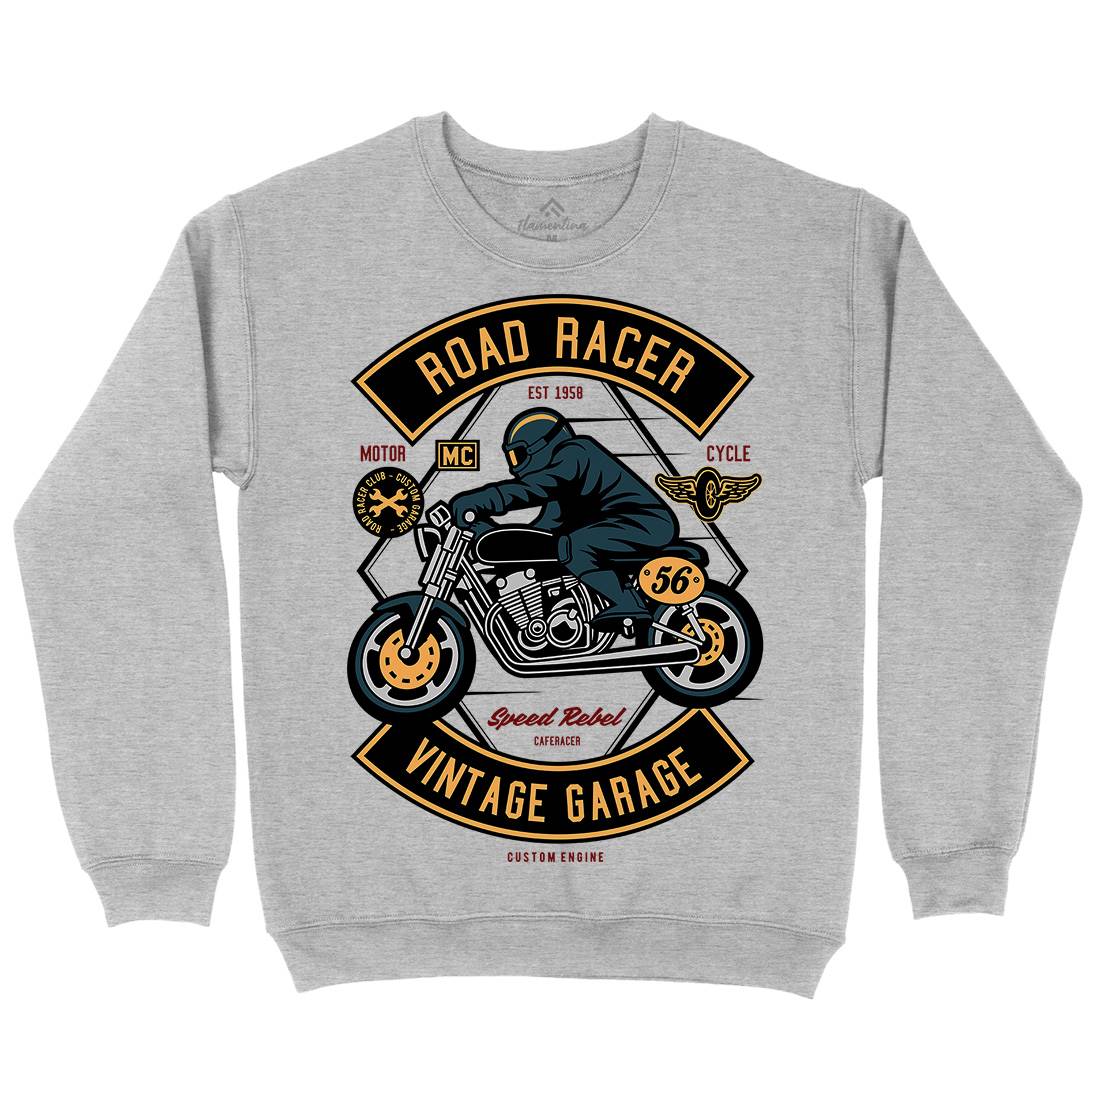 Road Racer Kids Crew Neck Sweatshirt Motorcycles D571